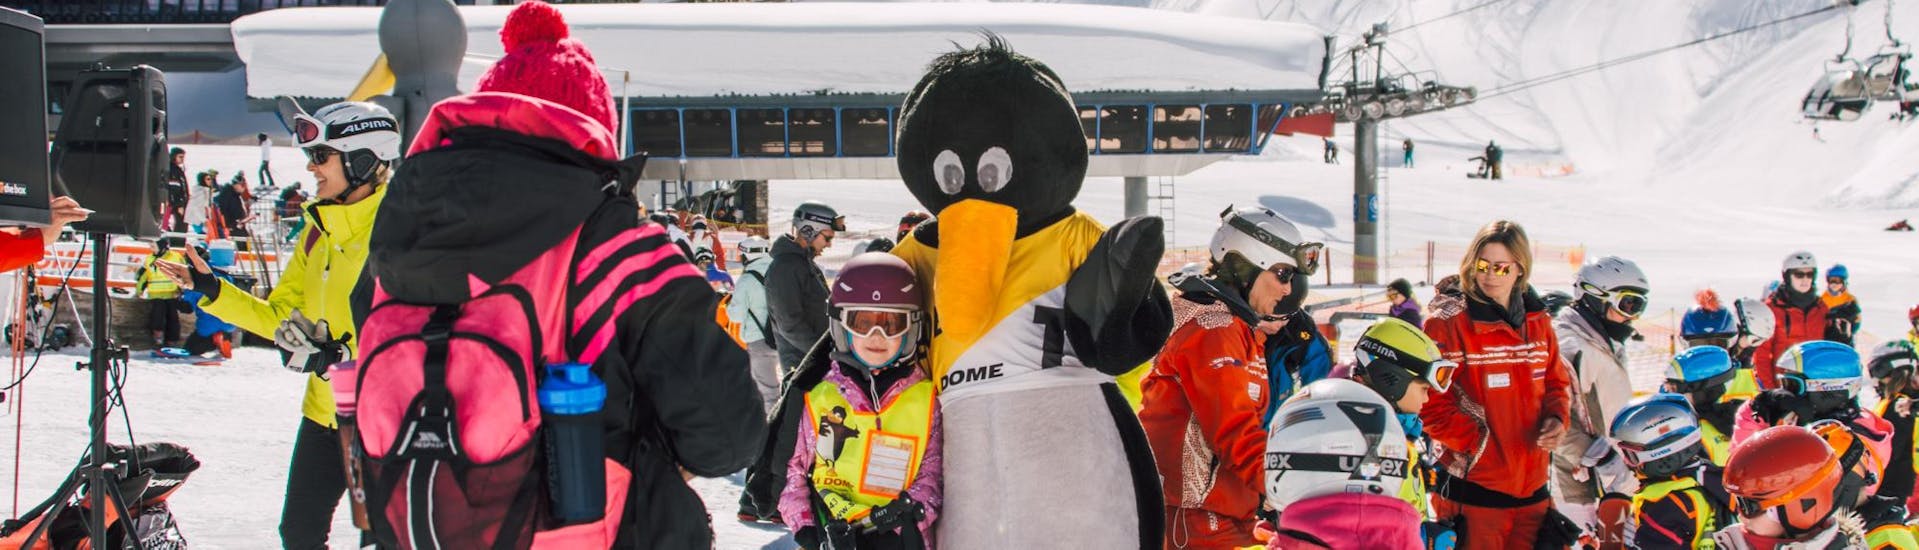 BOBO de pinguïn knuffelt kinderen tijdens de Kids Skilessen "Fun Package" (4-15 j.) voor beginners bij Ski Dome Oberschneider in Kaprun. 